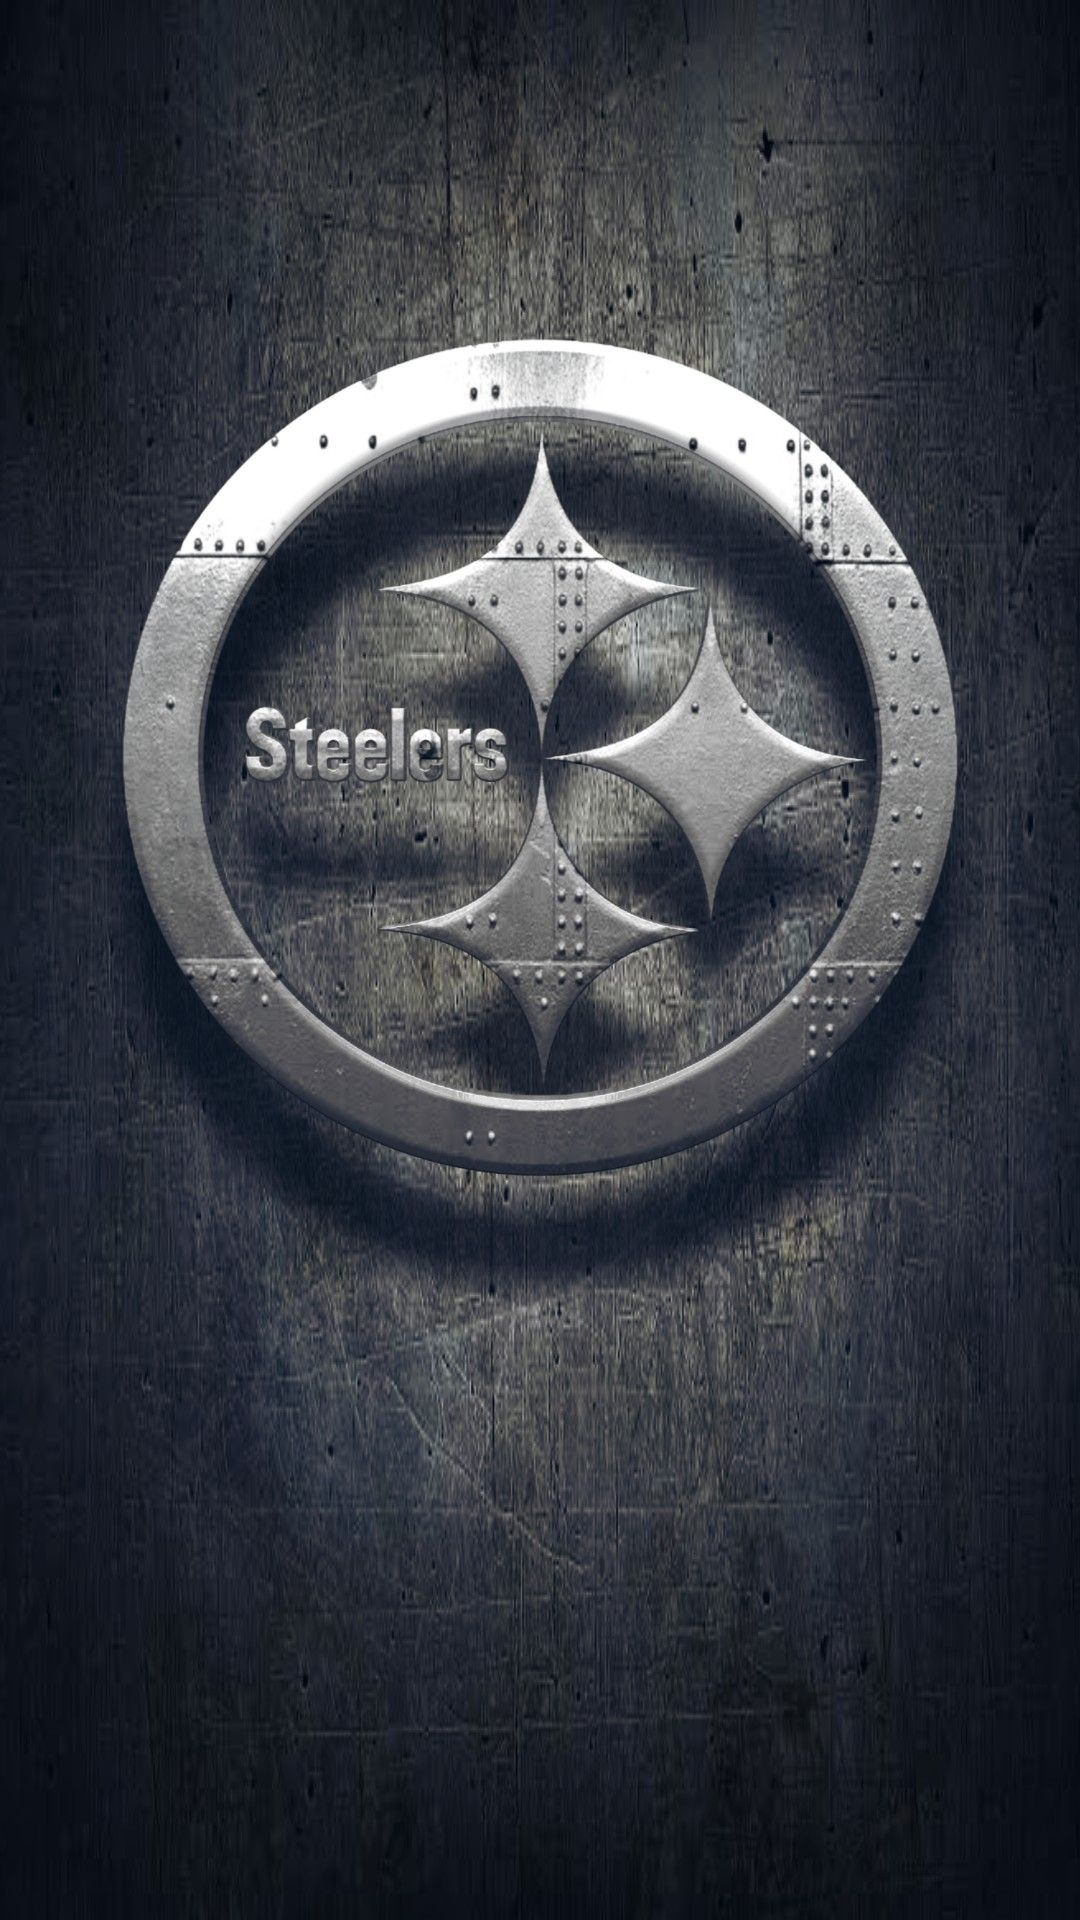 1080x1920 Steelers Wallpaper | Pittsburgh steelers wallpaper, Steelers, Pittsburgh steelers football